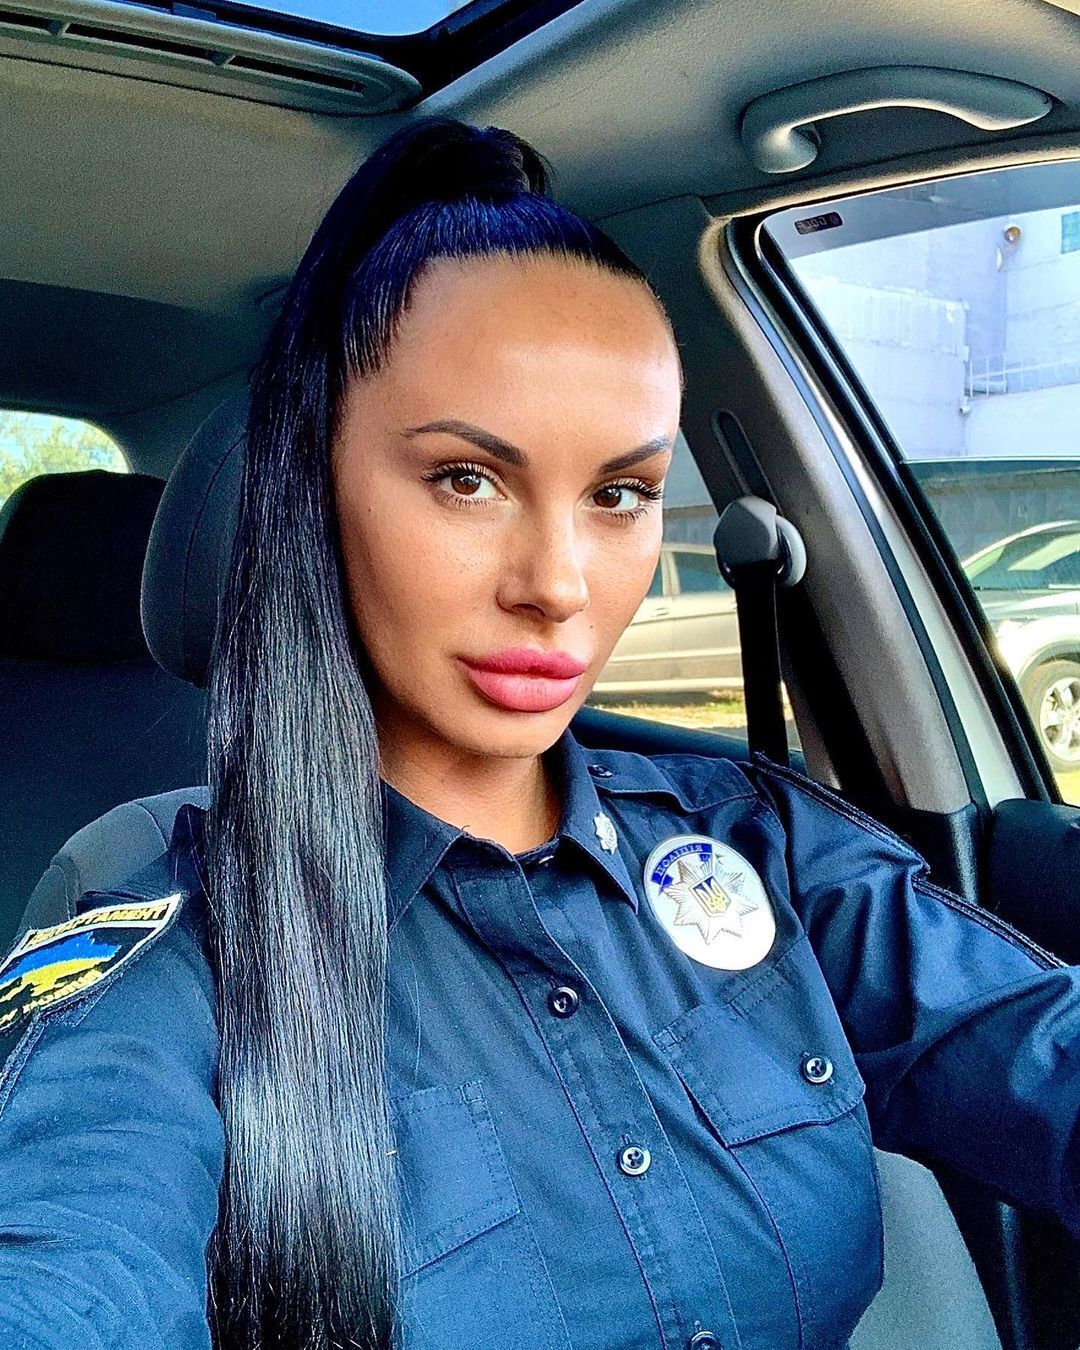 Как выглядит сегодня полицейская Людмила Милевич, которая в 2015 году стала звездой соцсетей из-за своей внешности. Фото